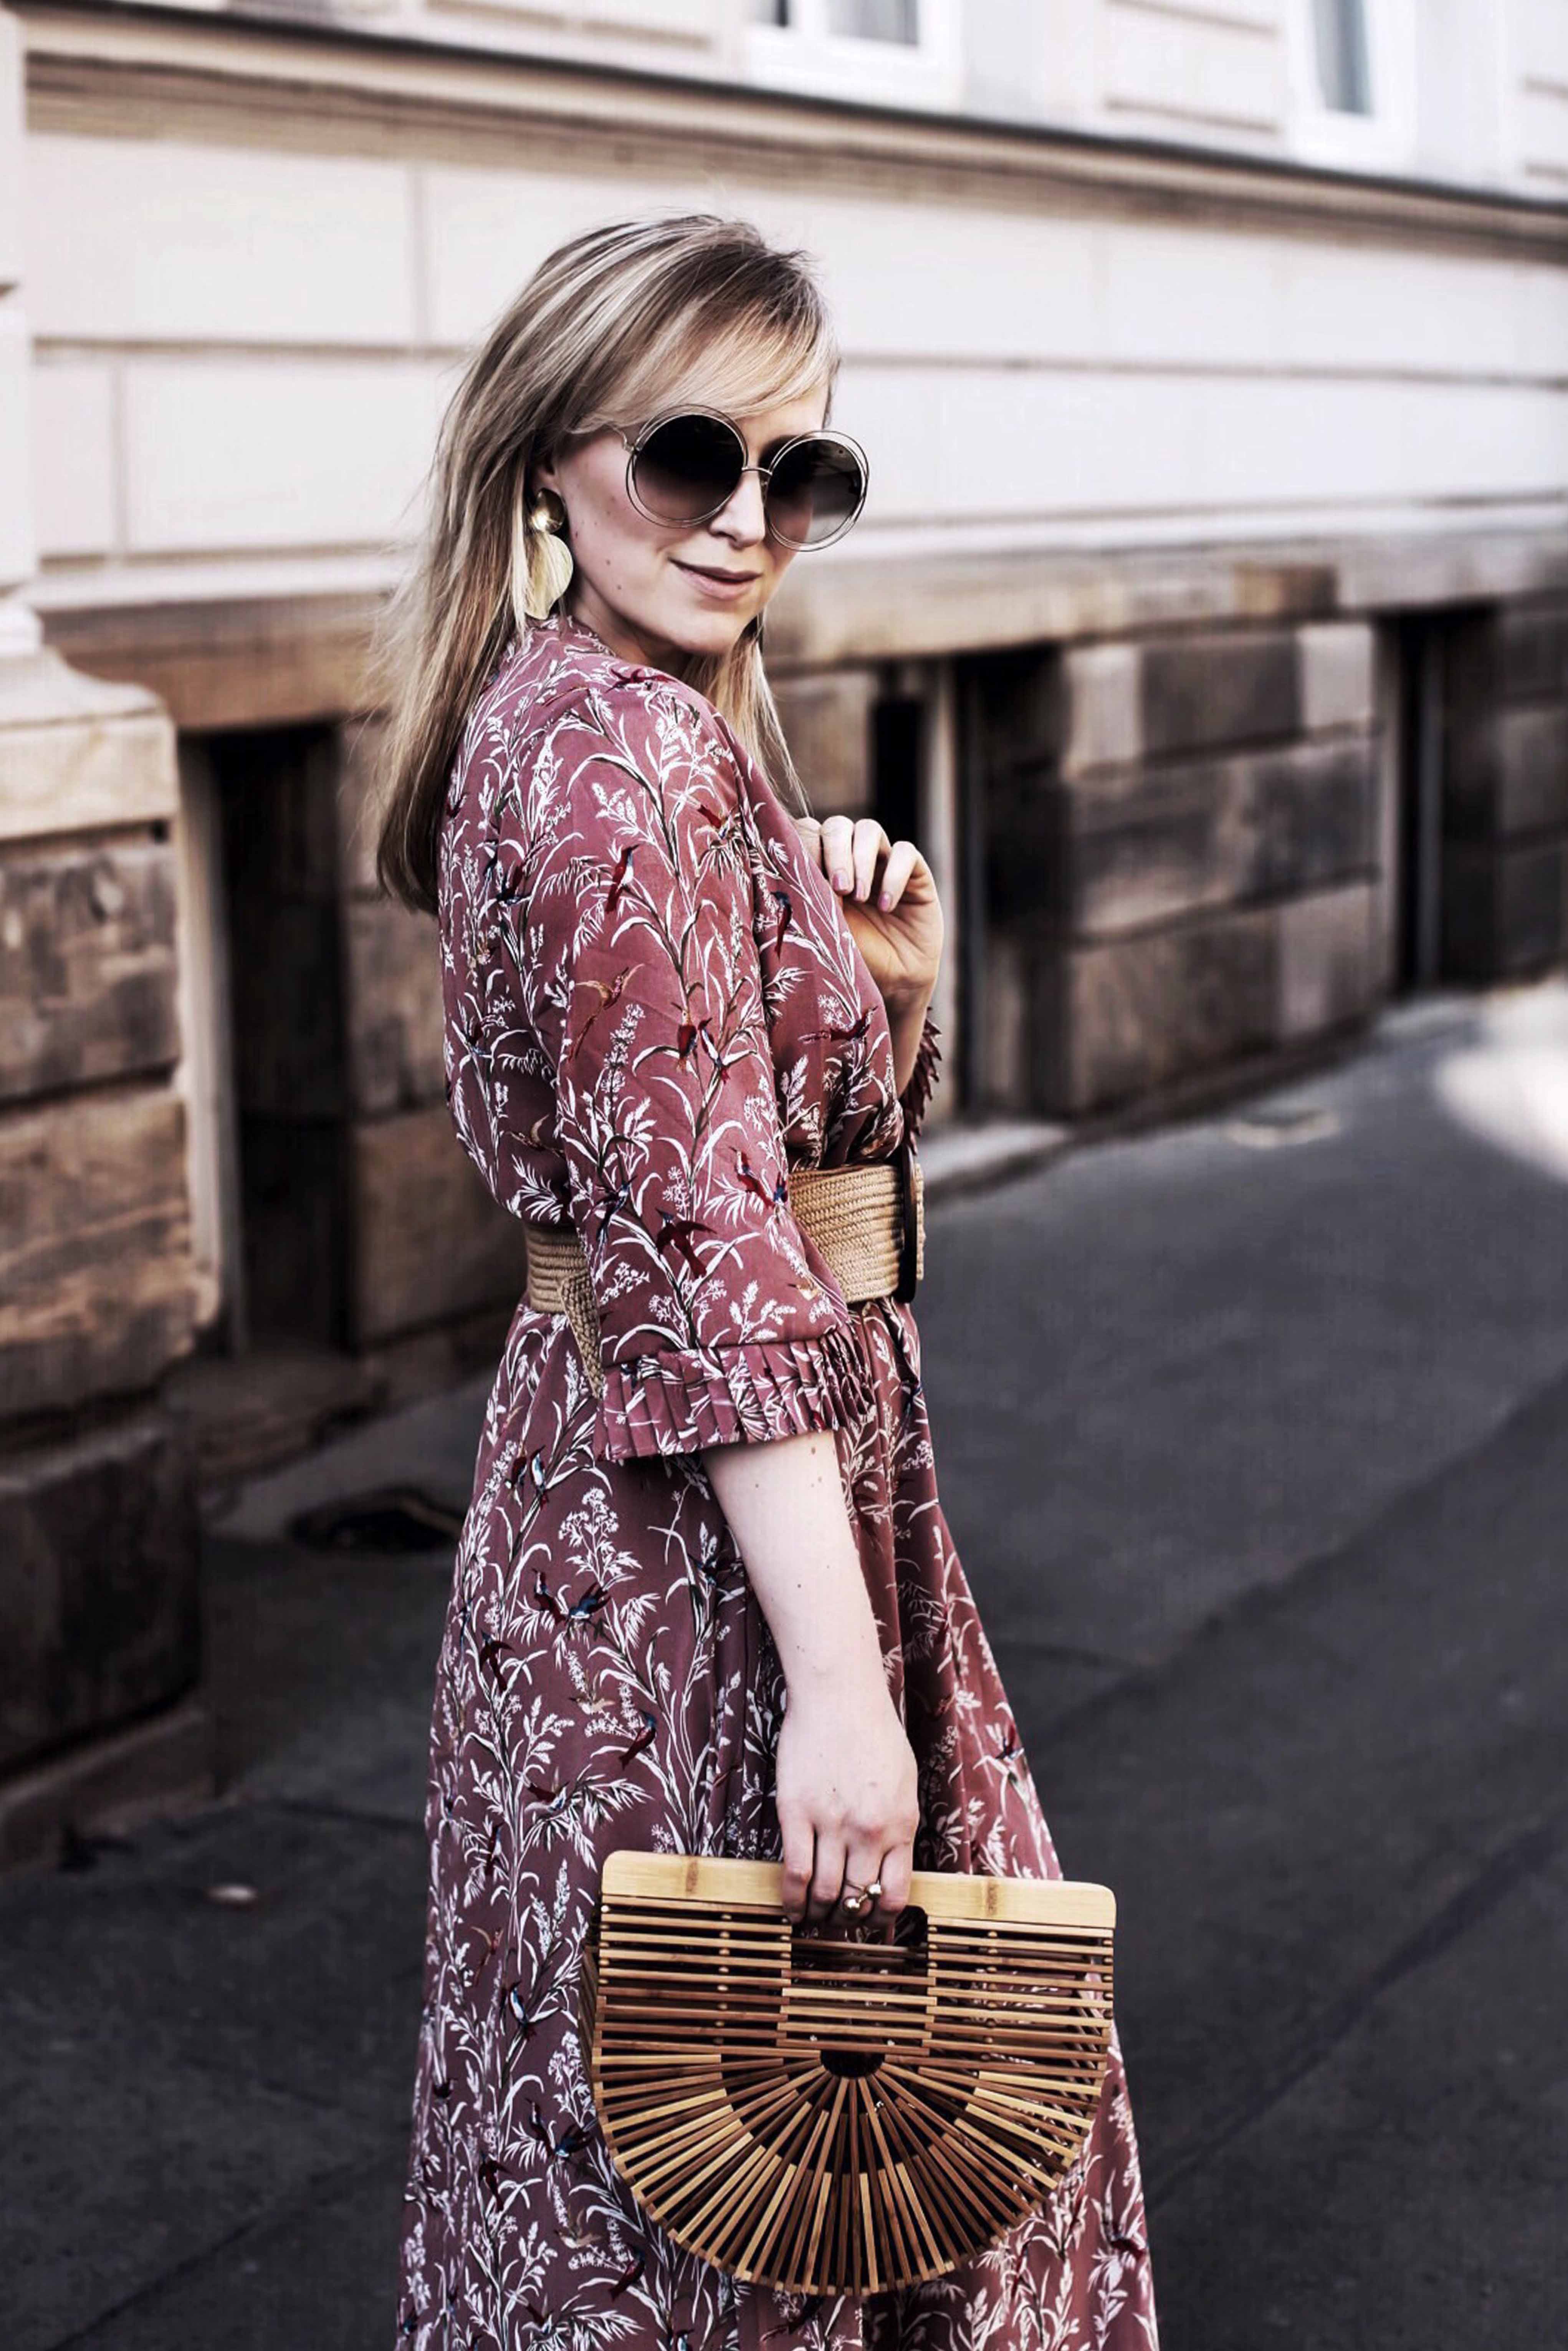 Sommerkleid Trend: Das Maxi Sommerkleid von Sofie Schnoor